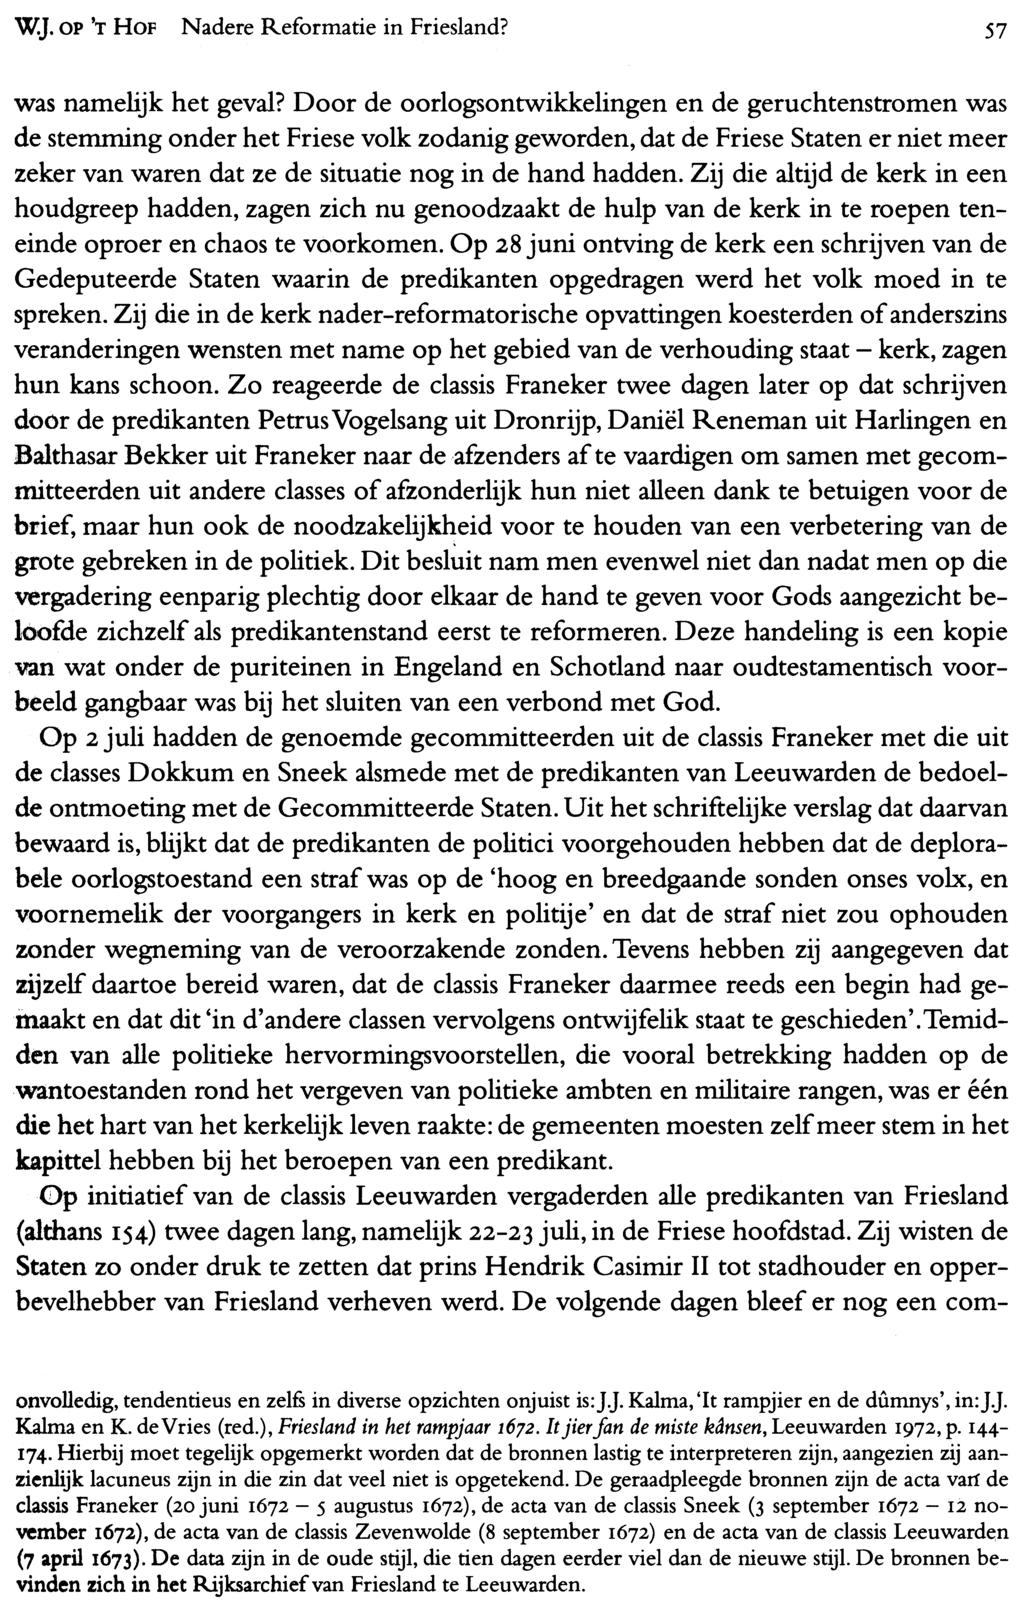 WJ. OP 'T HOF Nadere Reformatie in Friesland? 57 was namelijk het geval?